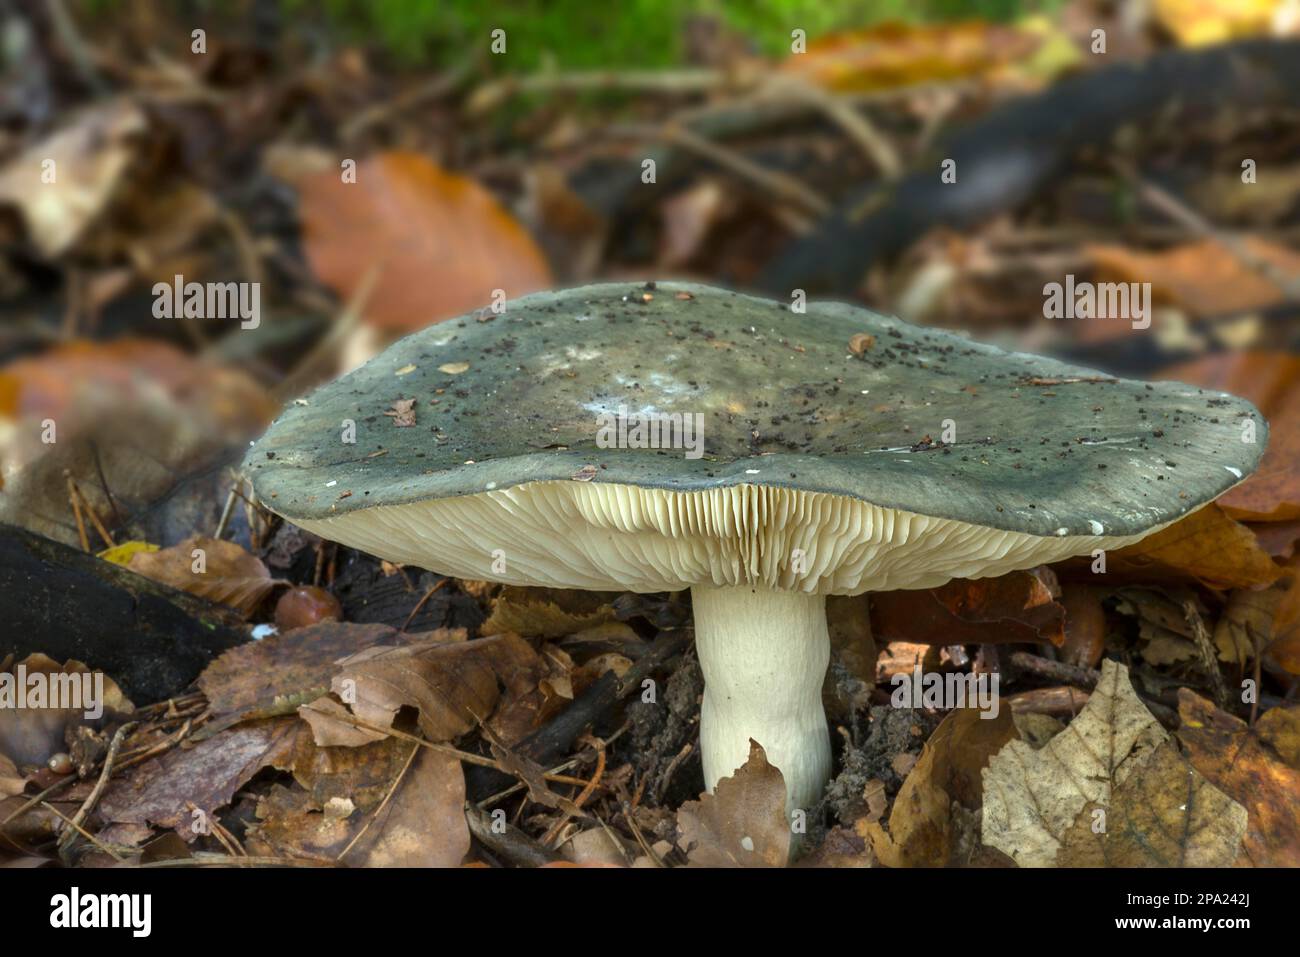 Funghi in foresta mista, Baviera, Germania Foto Stock